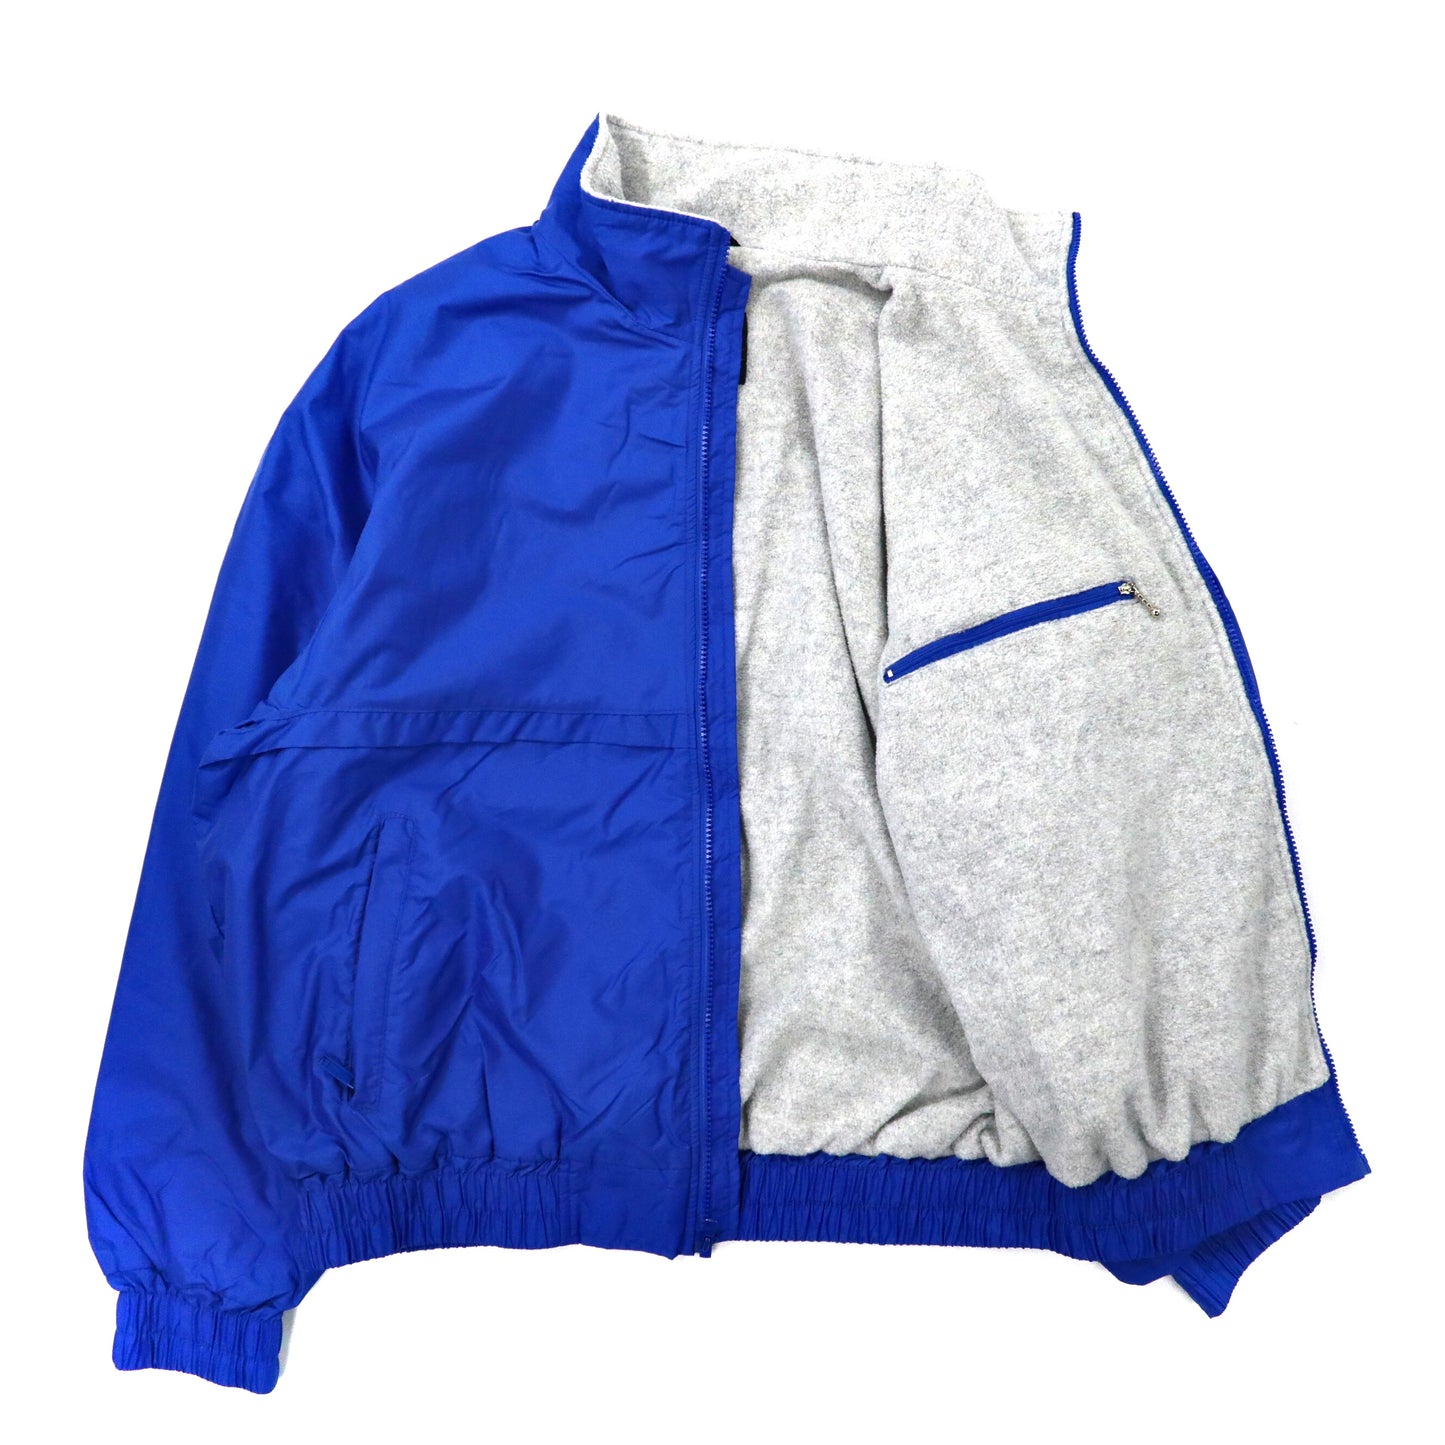 PEERLESS GARMENTS フリースライニング ナイロンジャケット XL ブルー Thinsulate 80年代 カナダ製